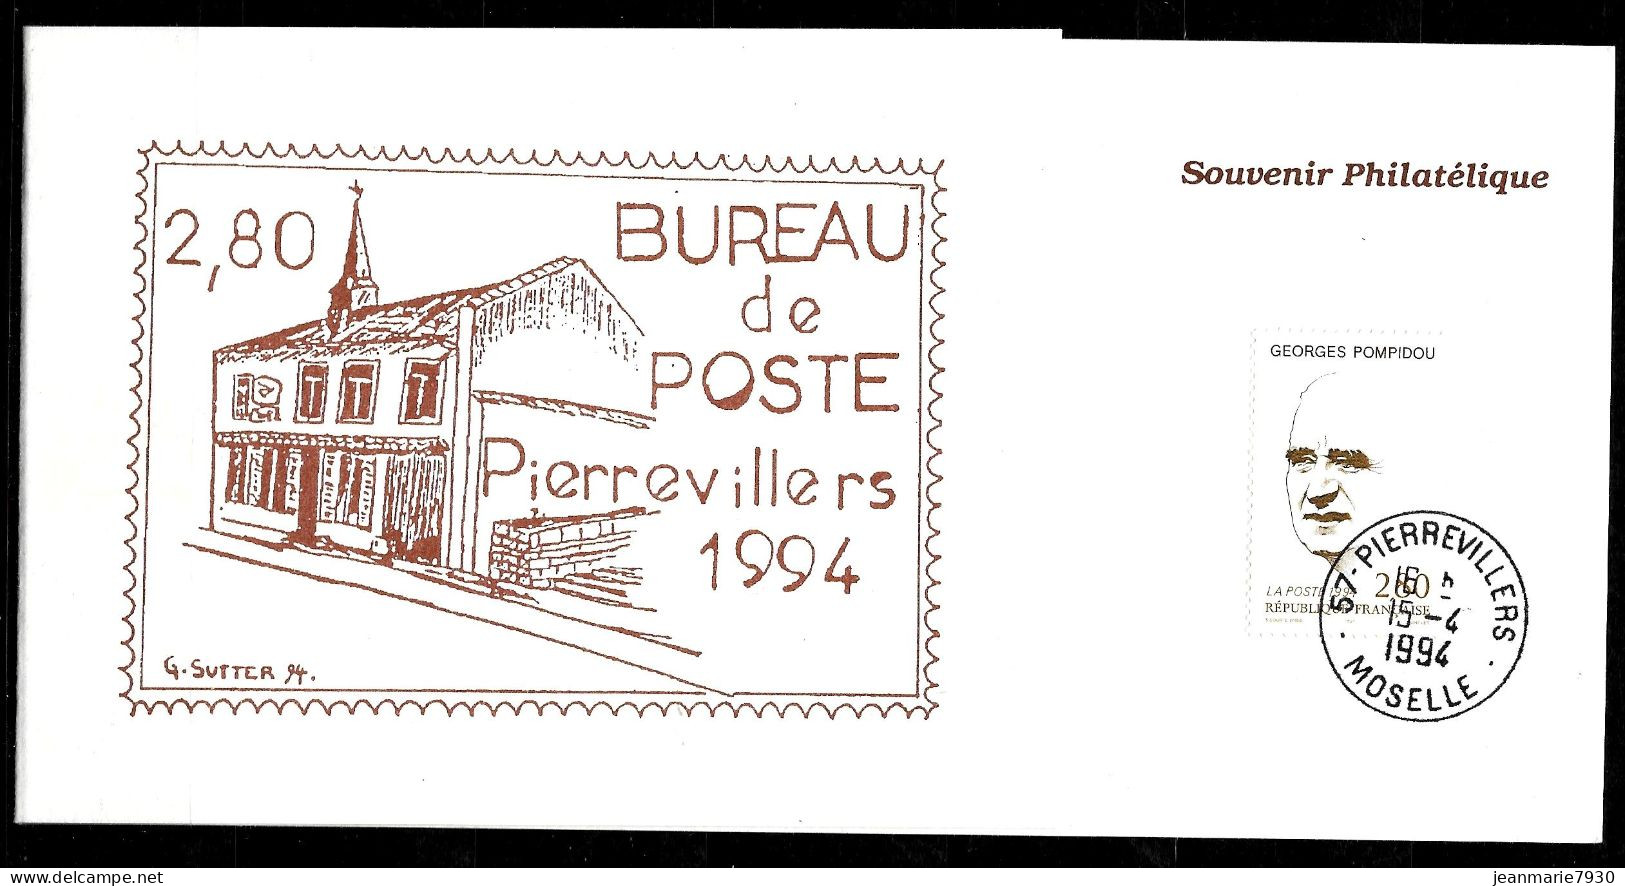 P234 - SOUVENIR PHILATELIQUE DE PIERREVILLERS DU 15/04/94 - Cachets Commémoratifs